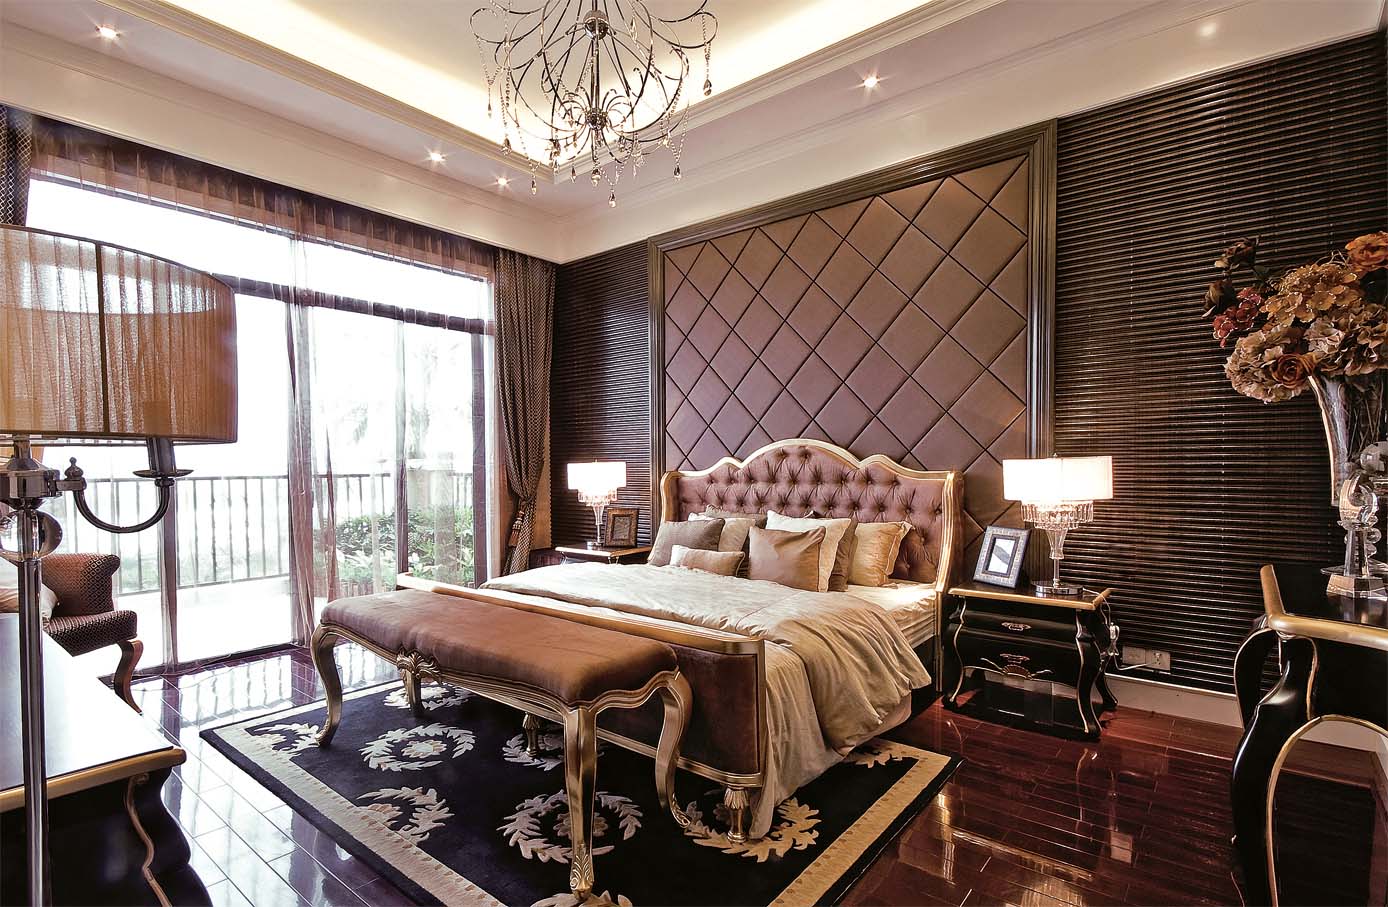 简约 欧式 后现代 别墅 小资 卧室图片来自孟庆莹在格林云墅后现代风格216平米的分享